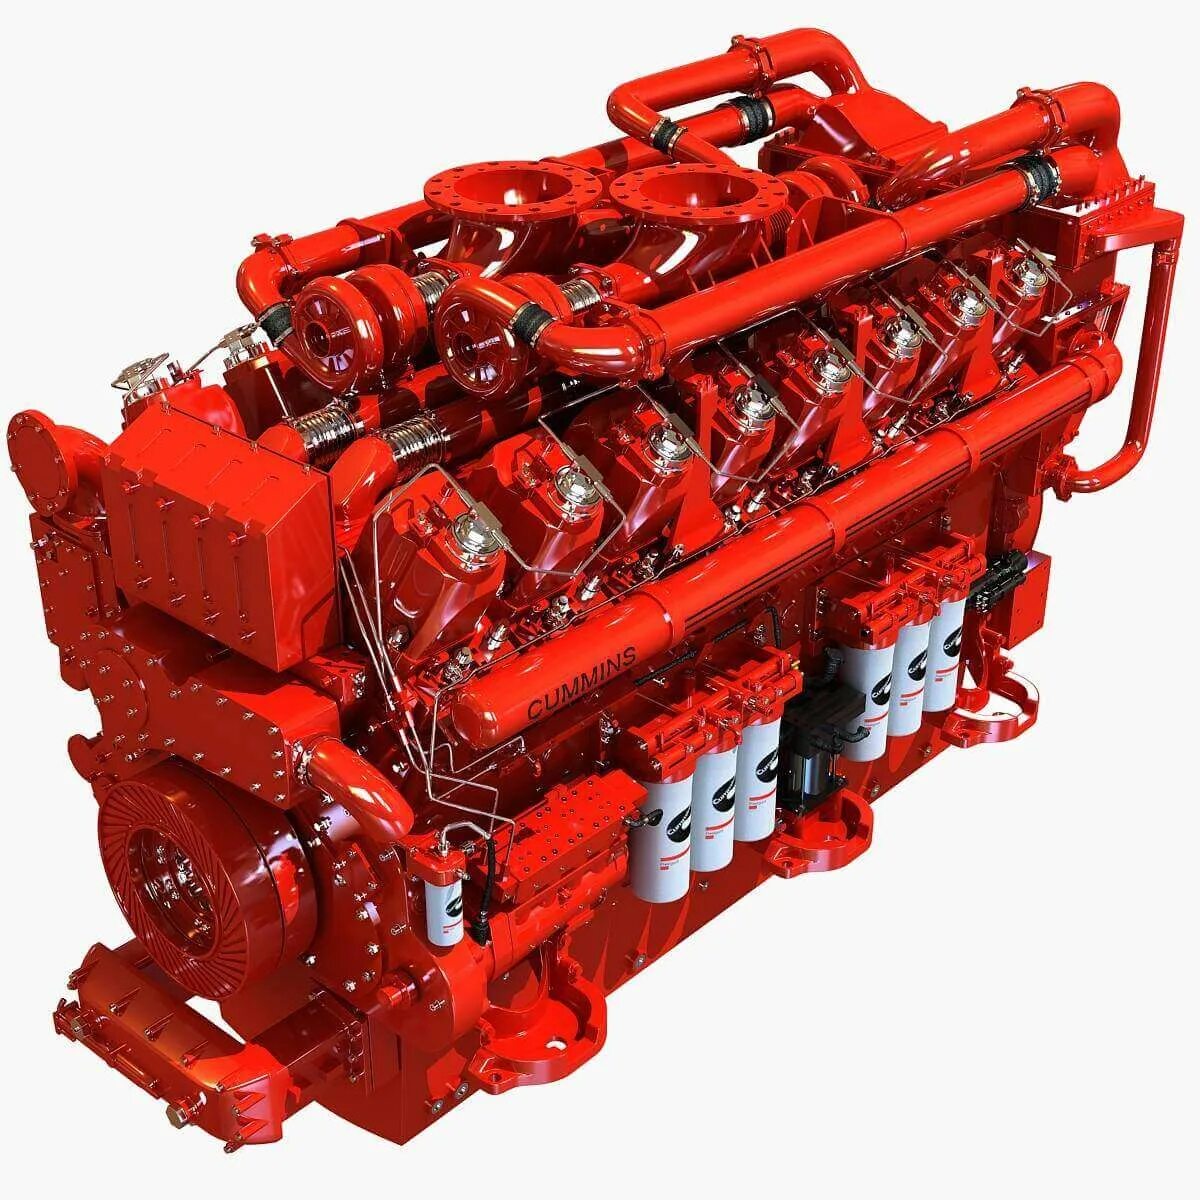 Cummins 16 литров модель двигателя. Дизельный двигатель каменс v 16. Грузовые двигатели cummins. Камминз компрессор 3д модель.